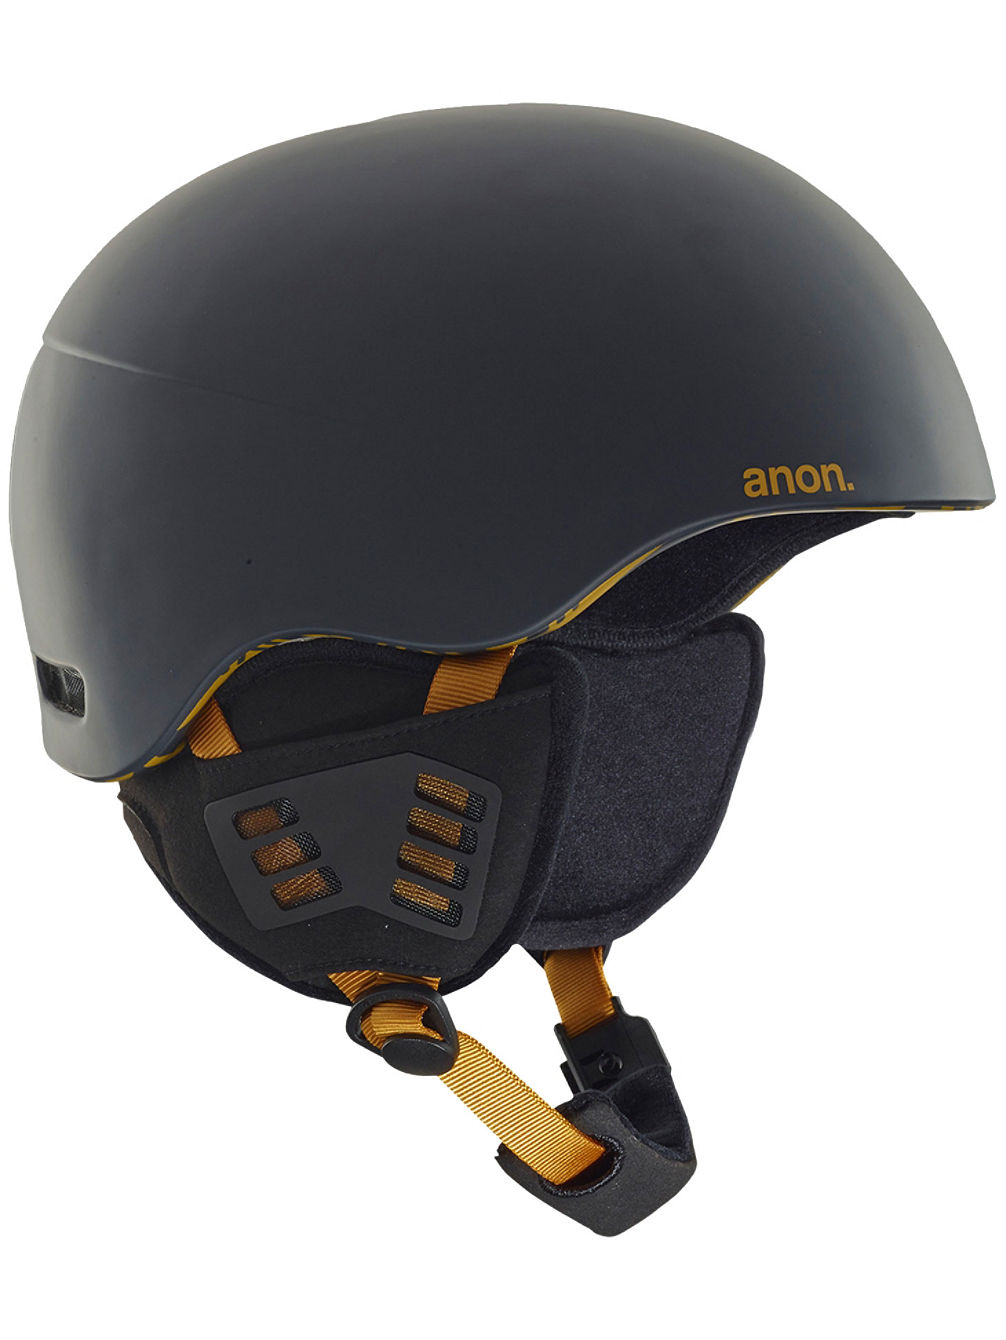 Helo 2.0 Helmet